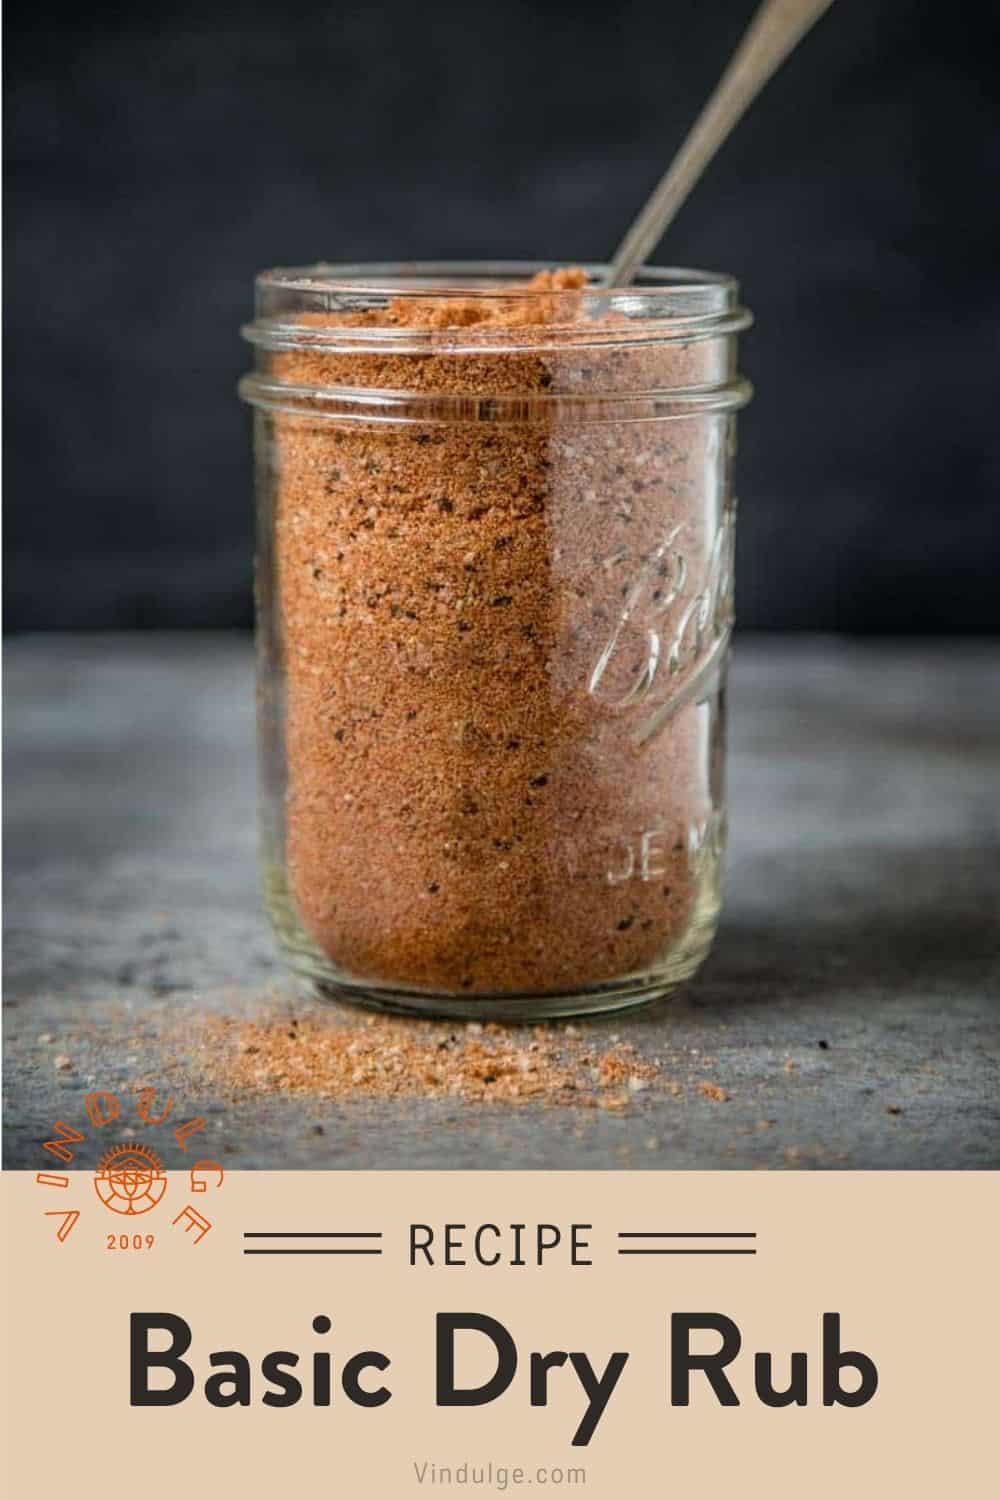 A mason jar of Homemade All Purpose Seasoning (or dry rub)